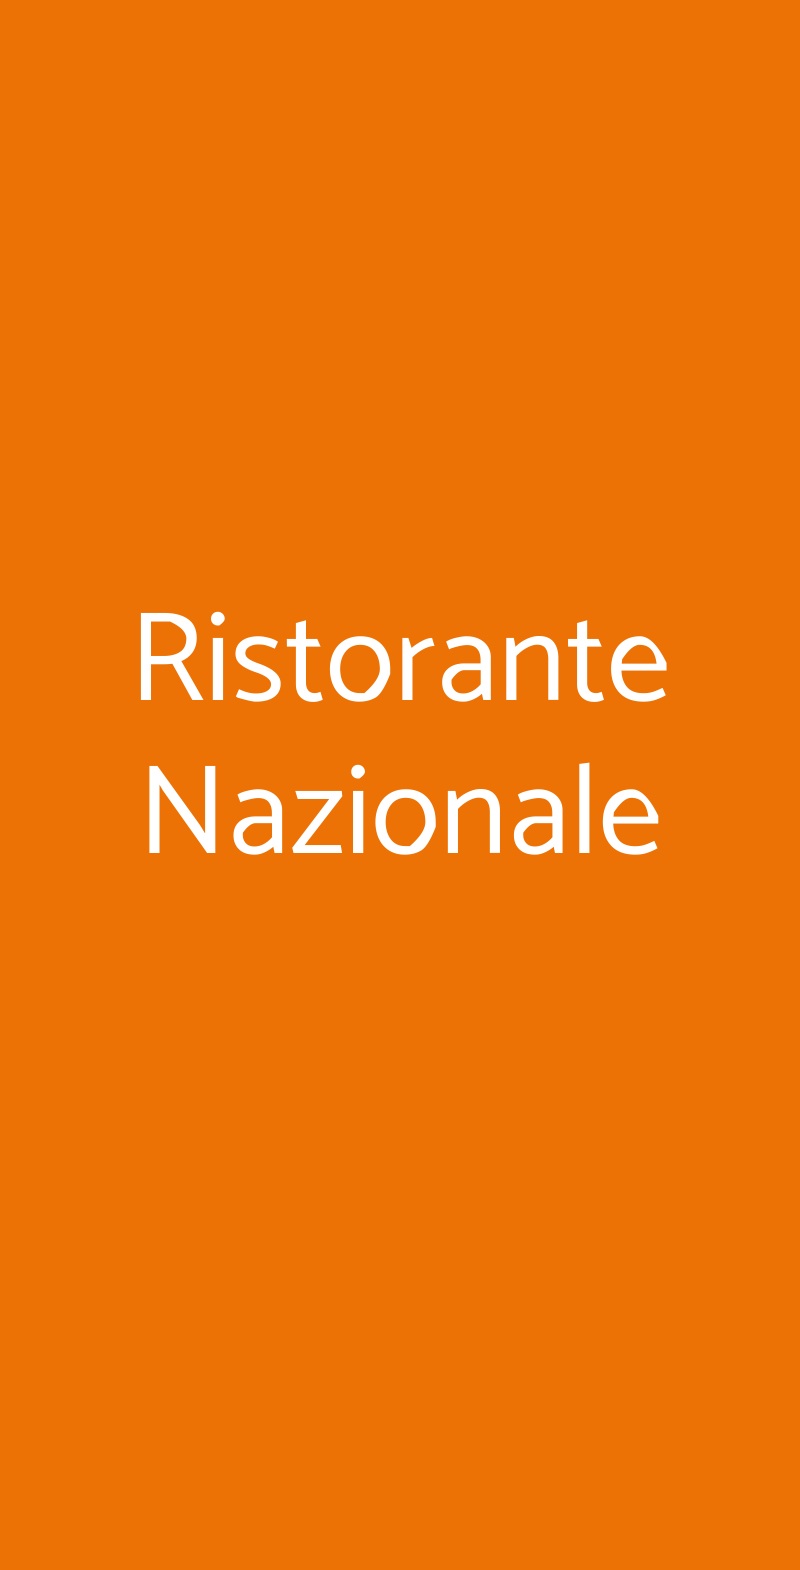 Ristorante Nazionale Milano menù 1 pagina